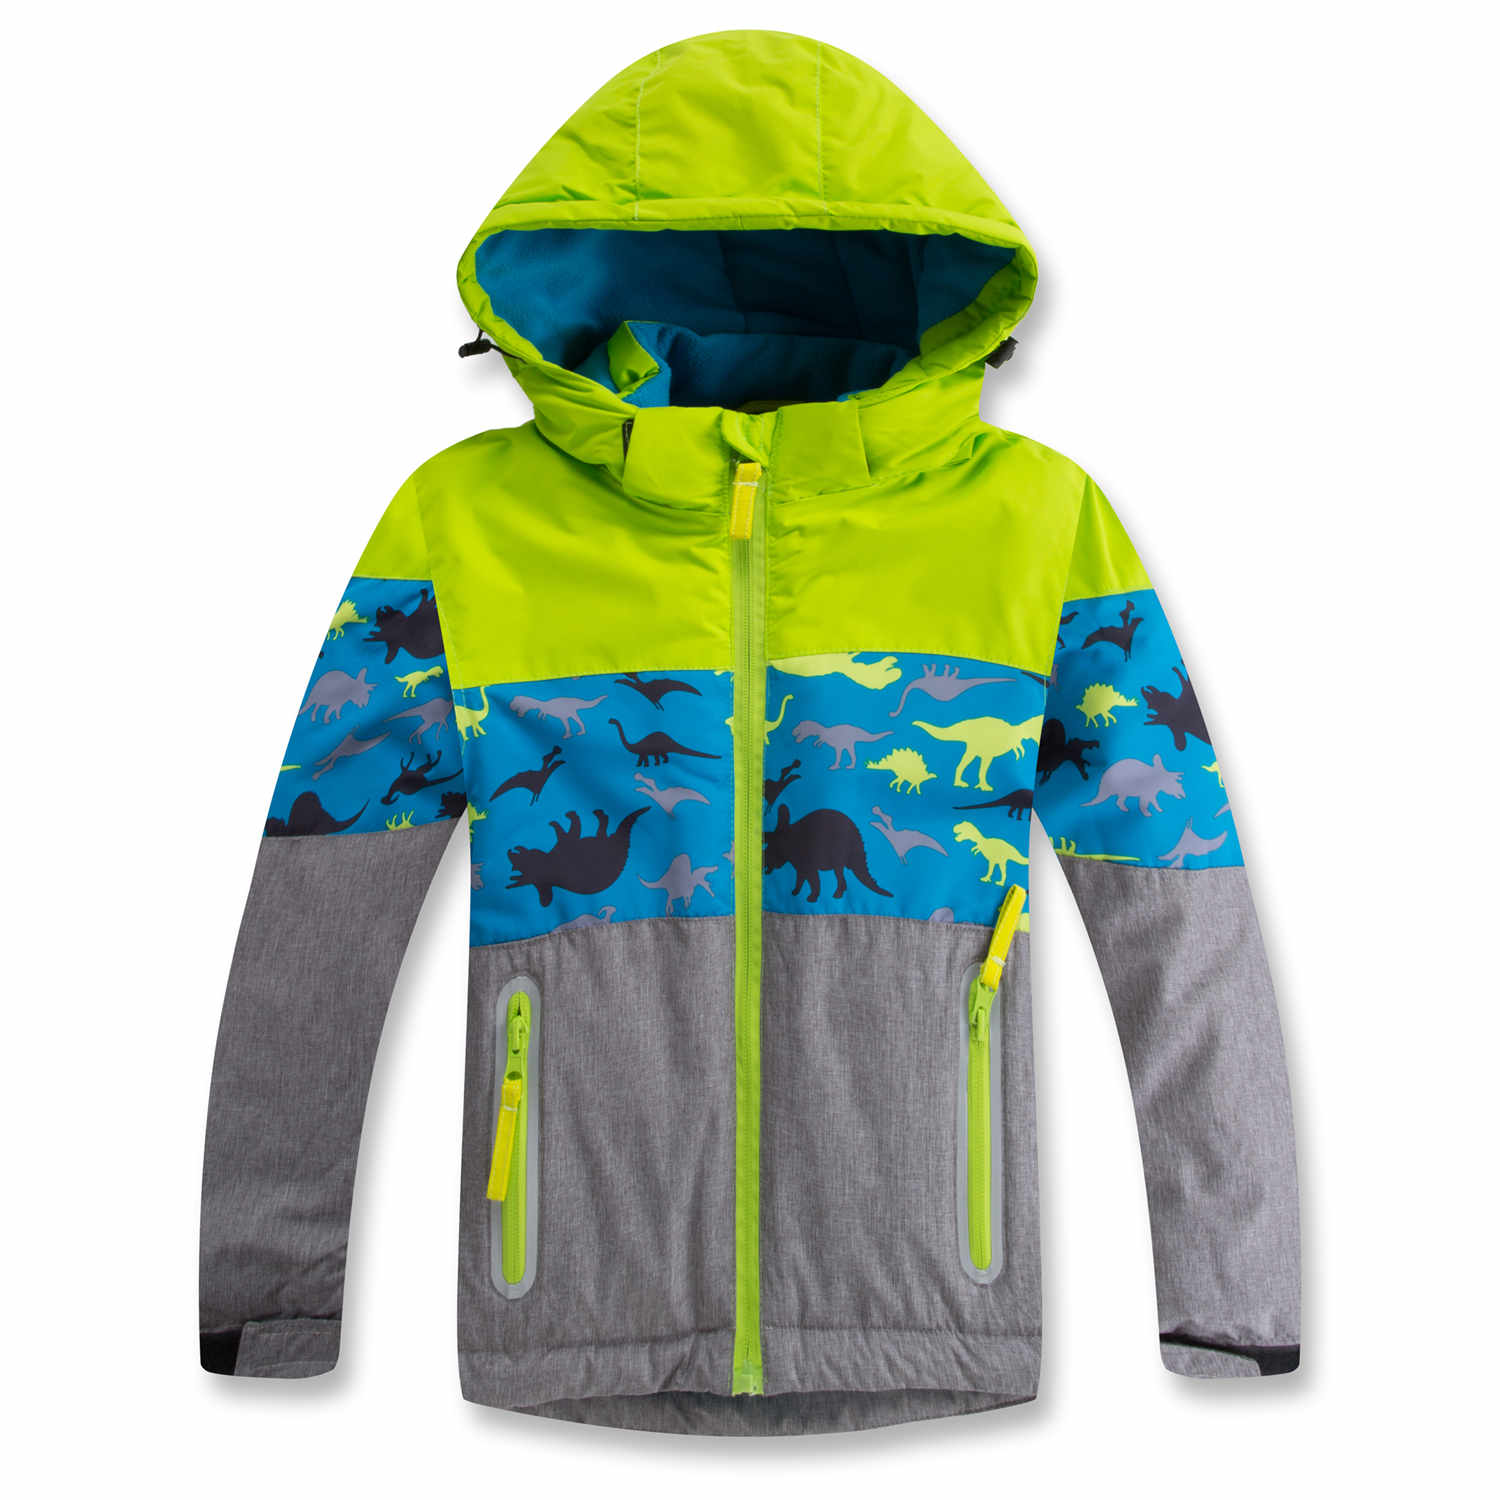 Chlapecká zimní bunda - KUGO PB3977, šedo - signální Barva: Signální, Velikost: 80